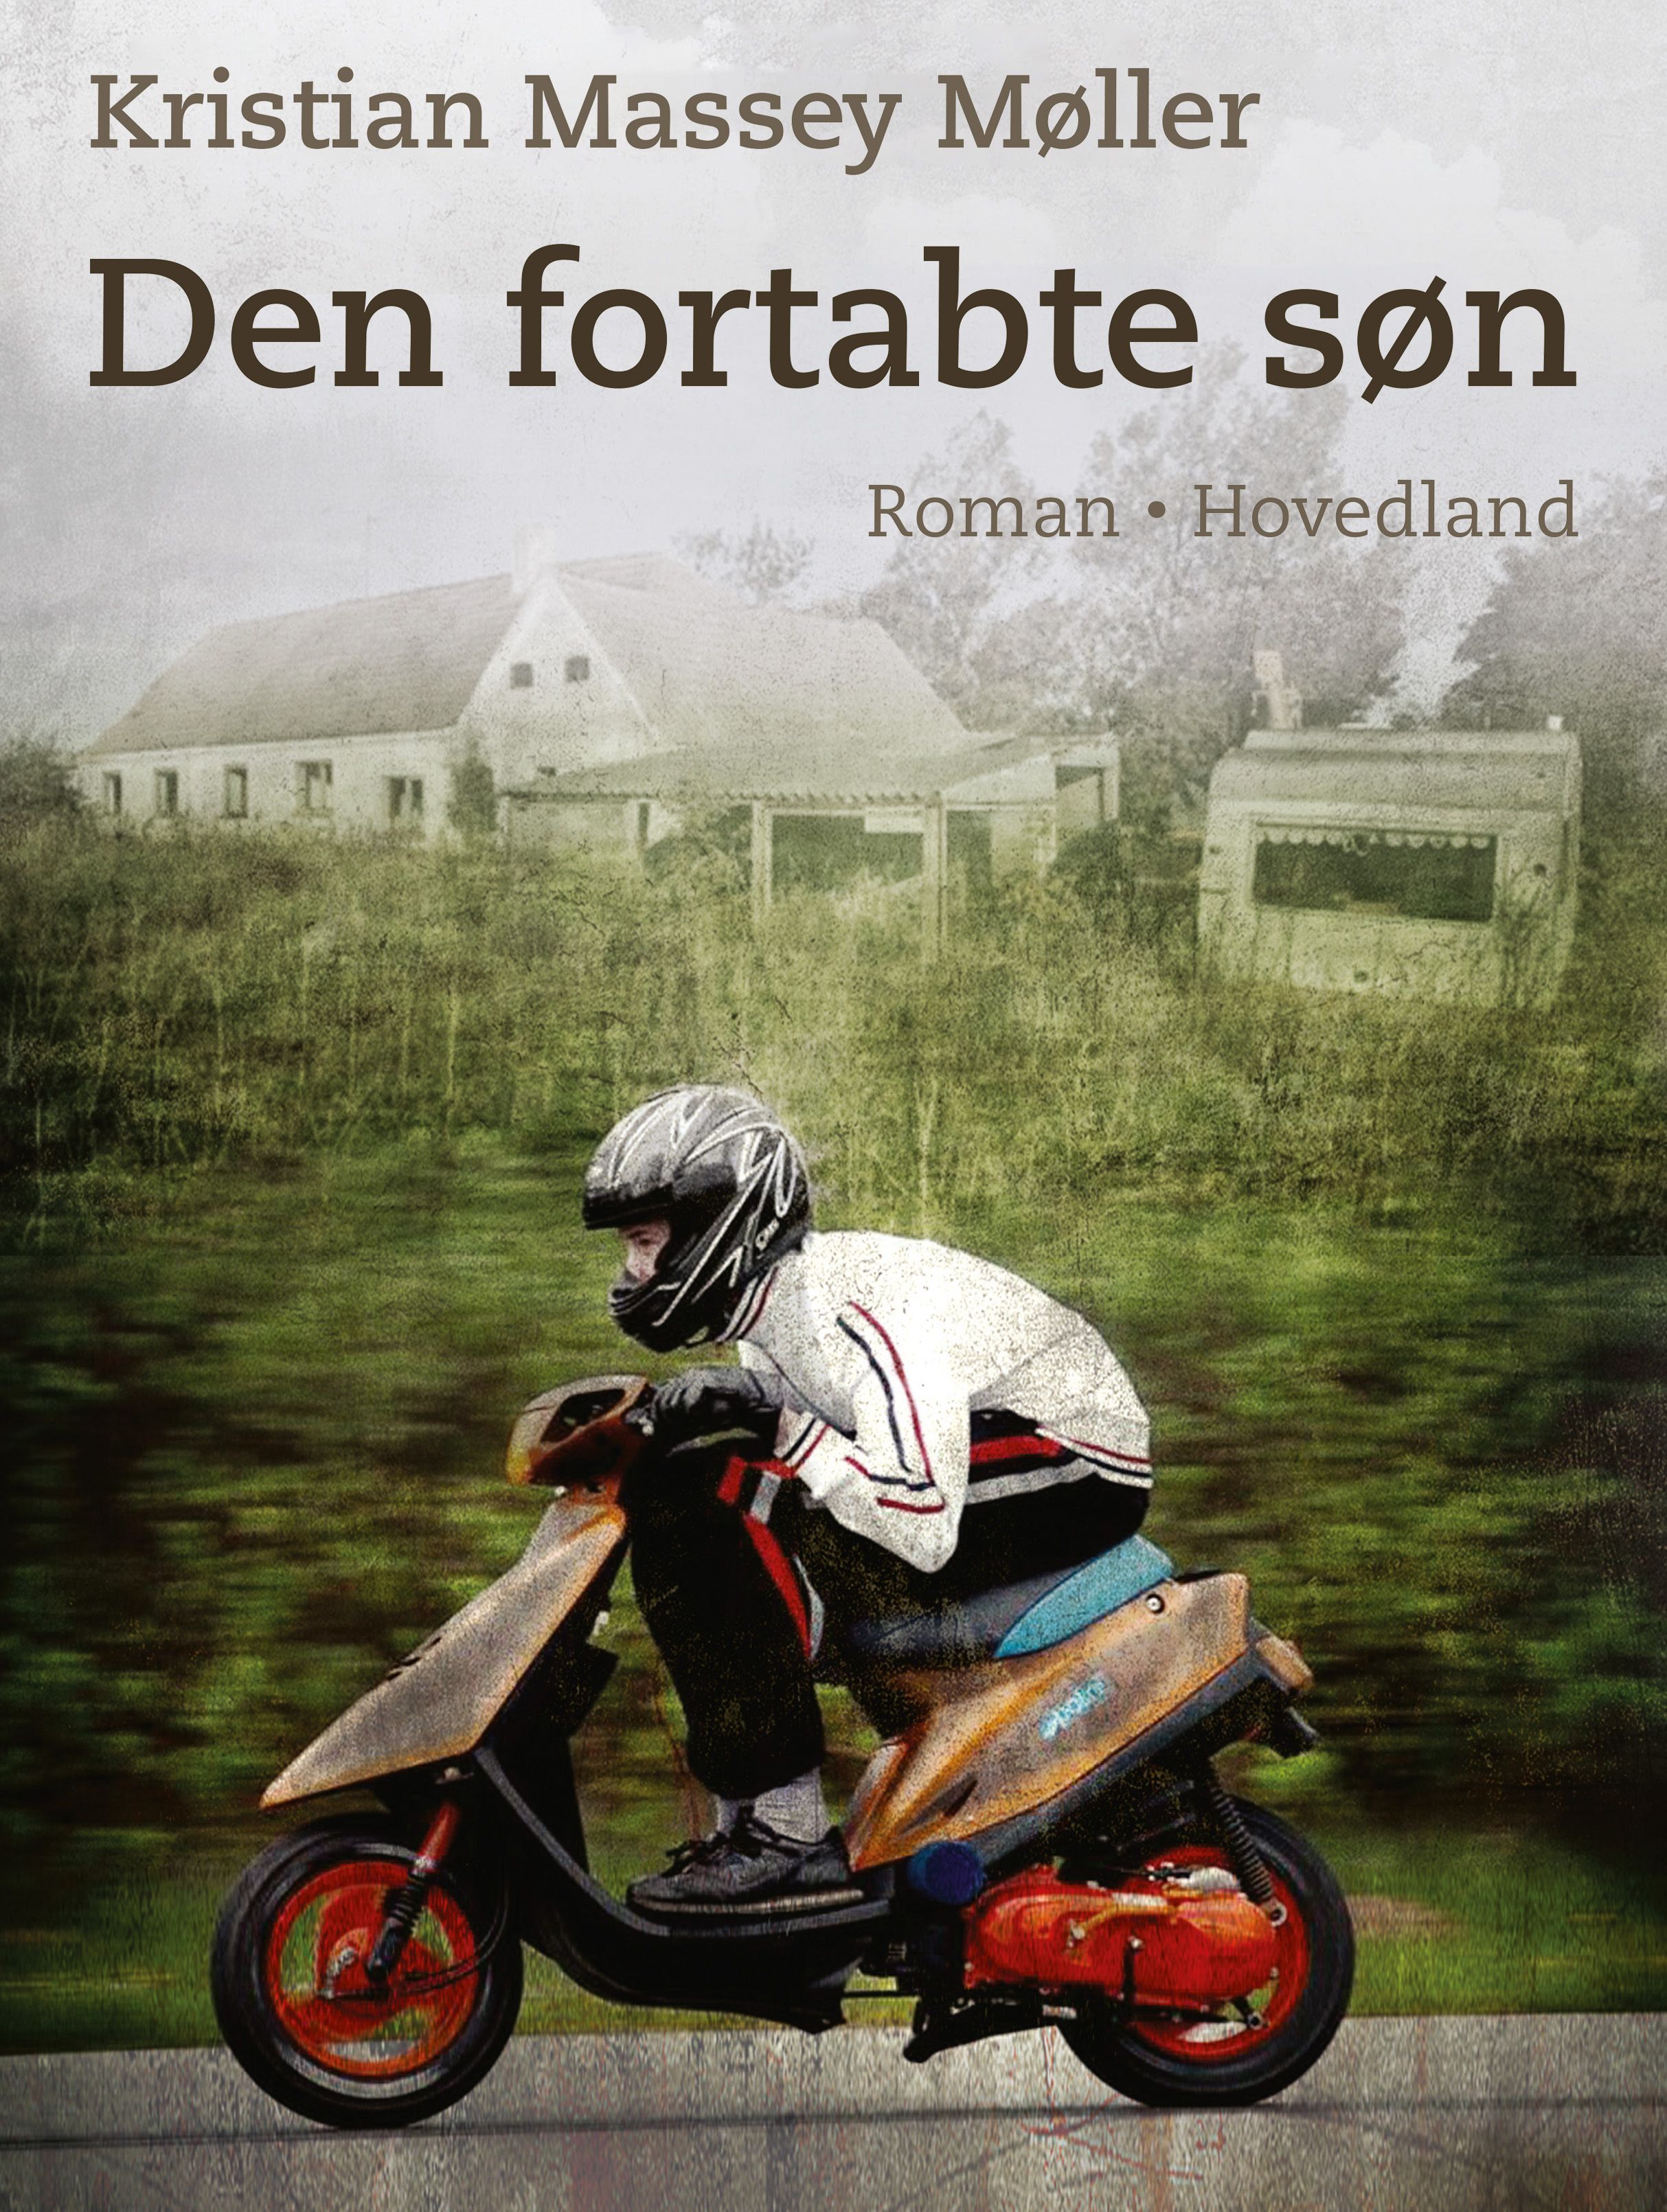 Den fortabte søn, e-bok av Kristian Massey Møller